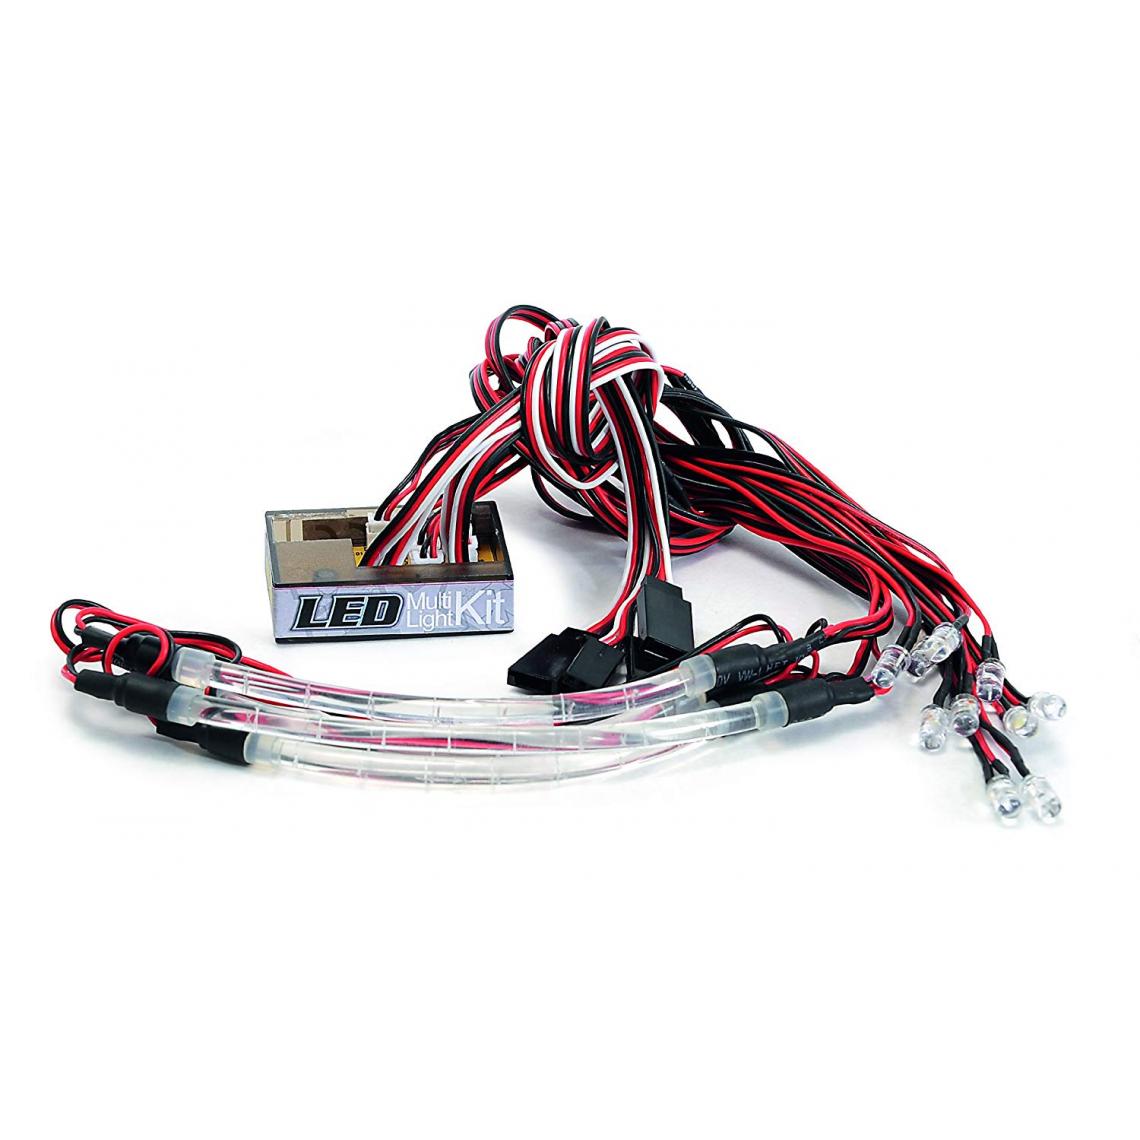 Inconnu - Carson 500906153 – Drift Multi Kit d'éclairage LED - Accessoires et pièces